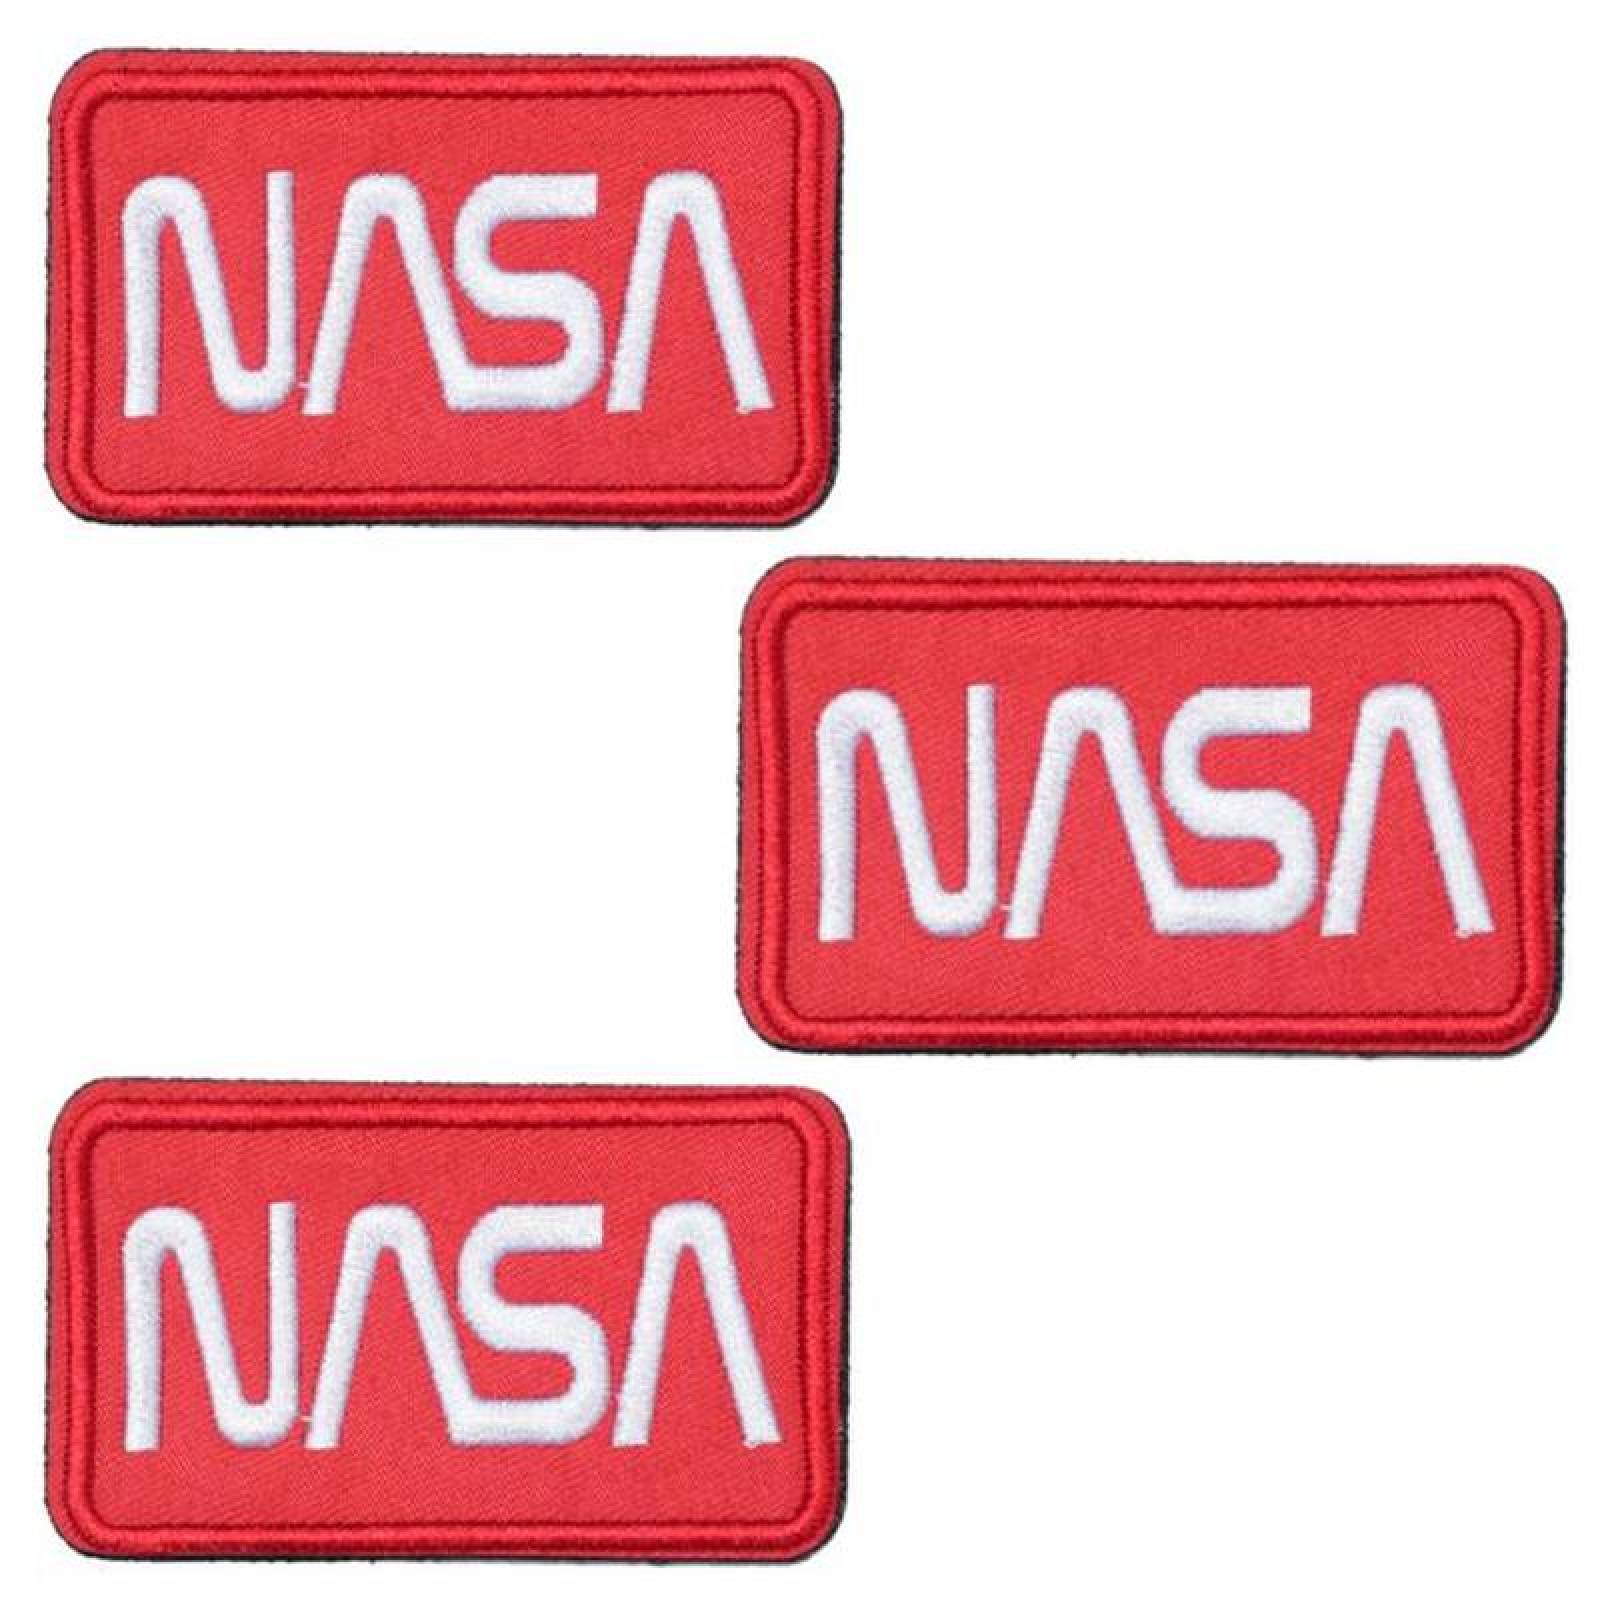 Parche de la NASA con Velcro MXNAA-001-1 1 Parche Nasa 9,1x4,1cm Rojo  Blanco Bordado con Velcro, Nasa04